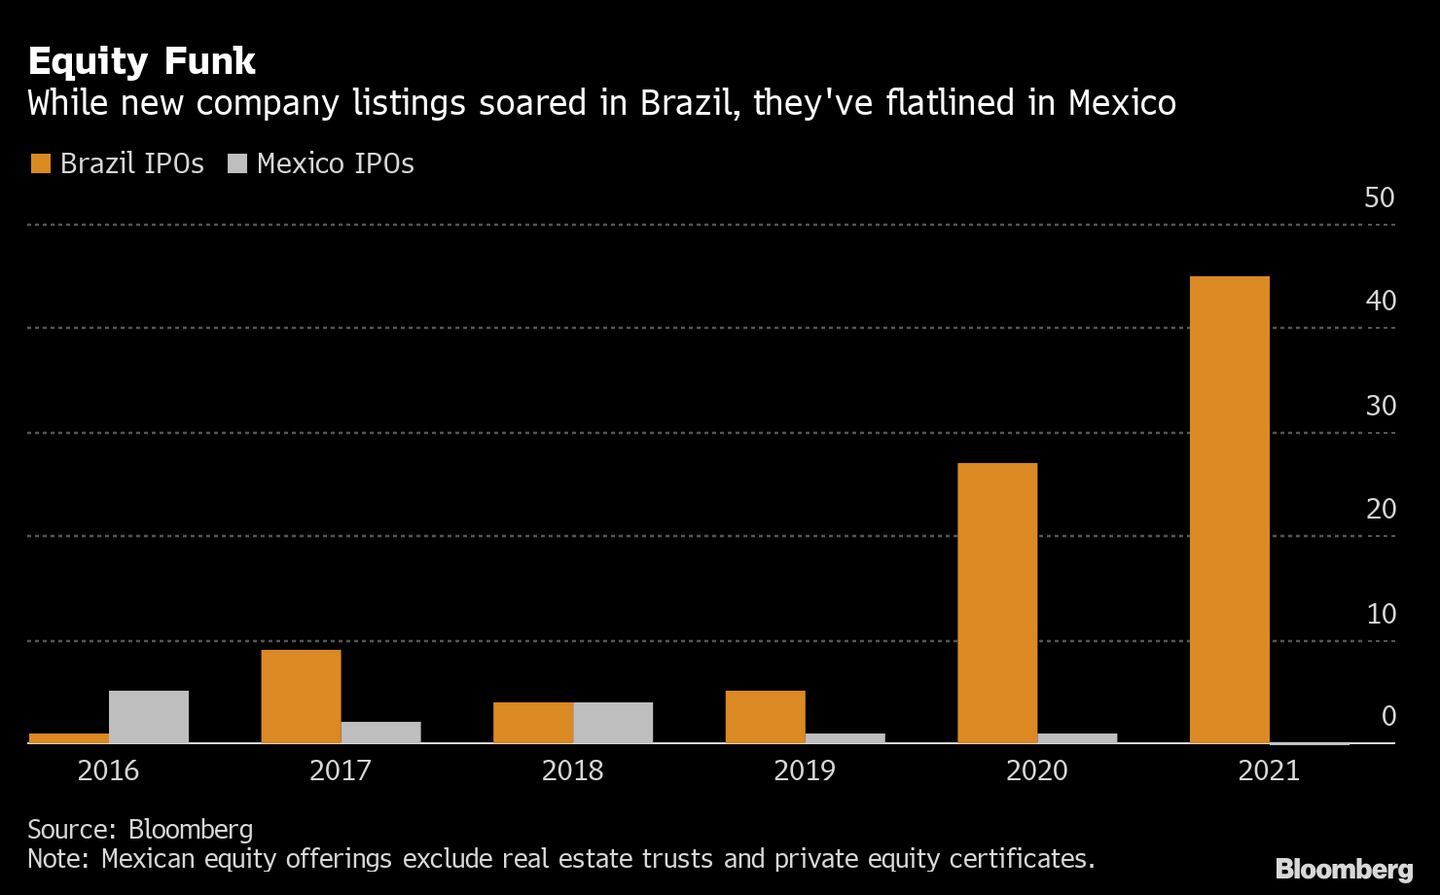 Si bien las nuevas salidas a bolsa en Brasil se han disparado, en México se han estancado. dfd